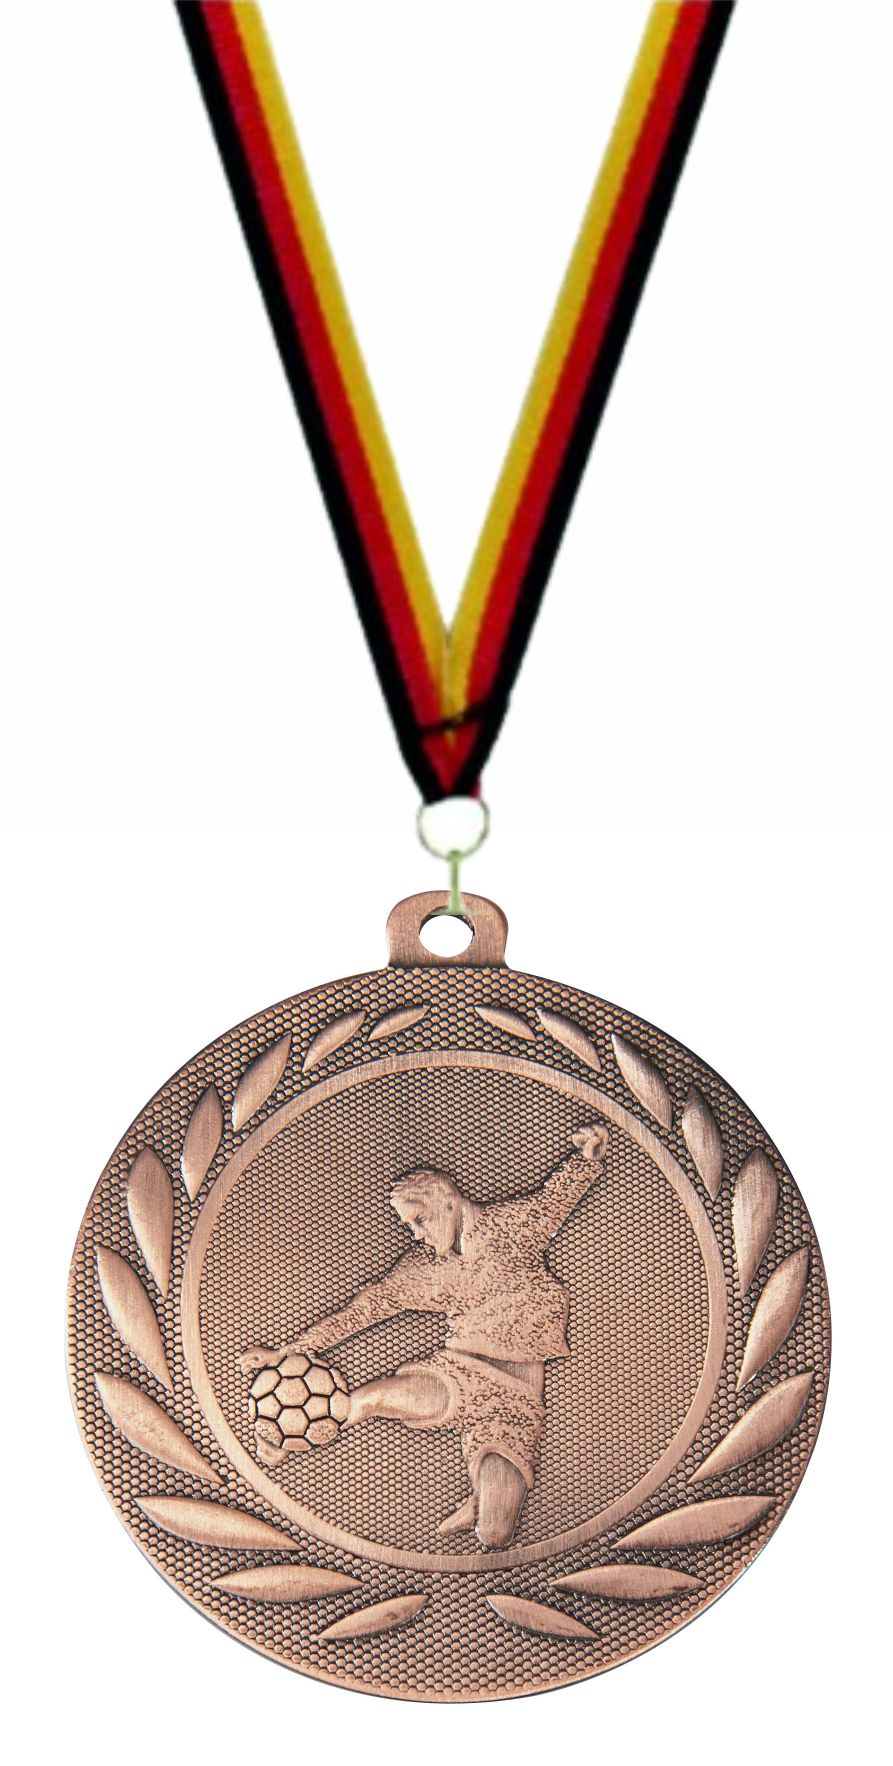 Fußball Medaille DI5000C inkl. Band u. Beschriftung  Bronze Fertig montiert gegen Aufpreis